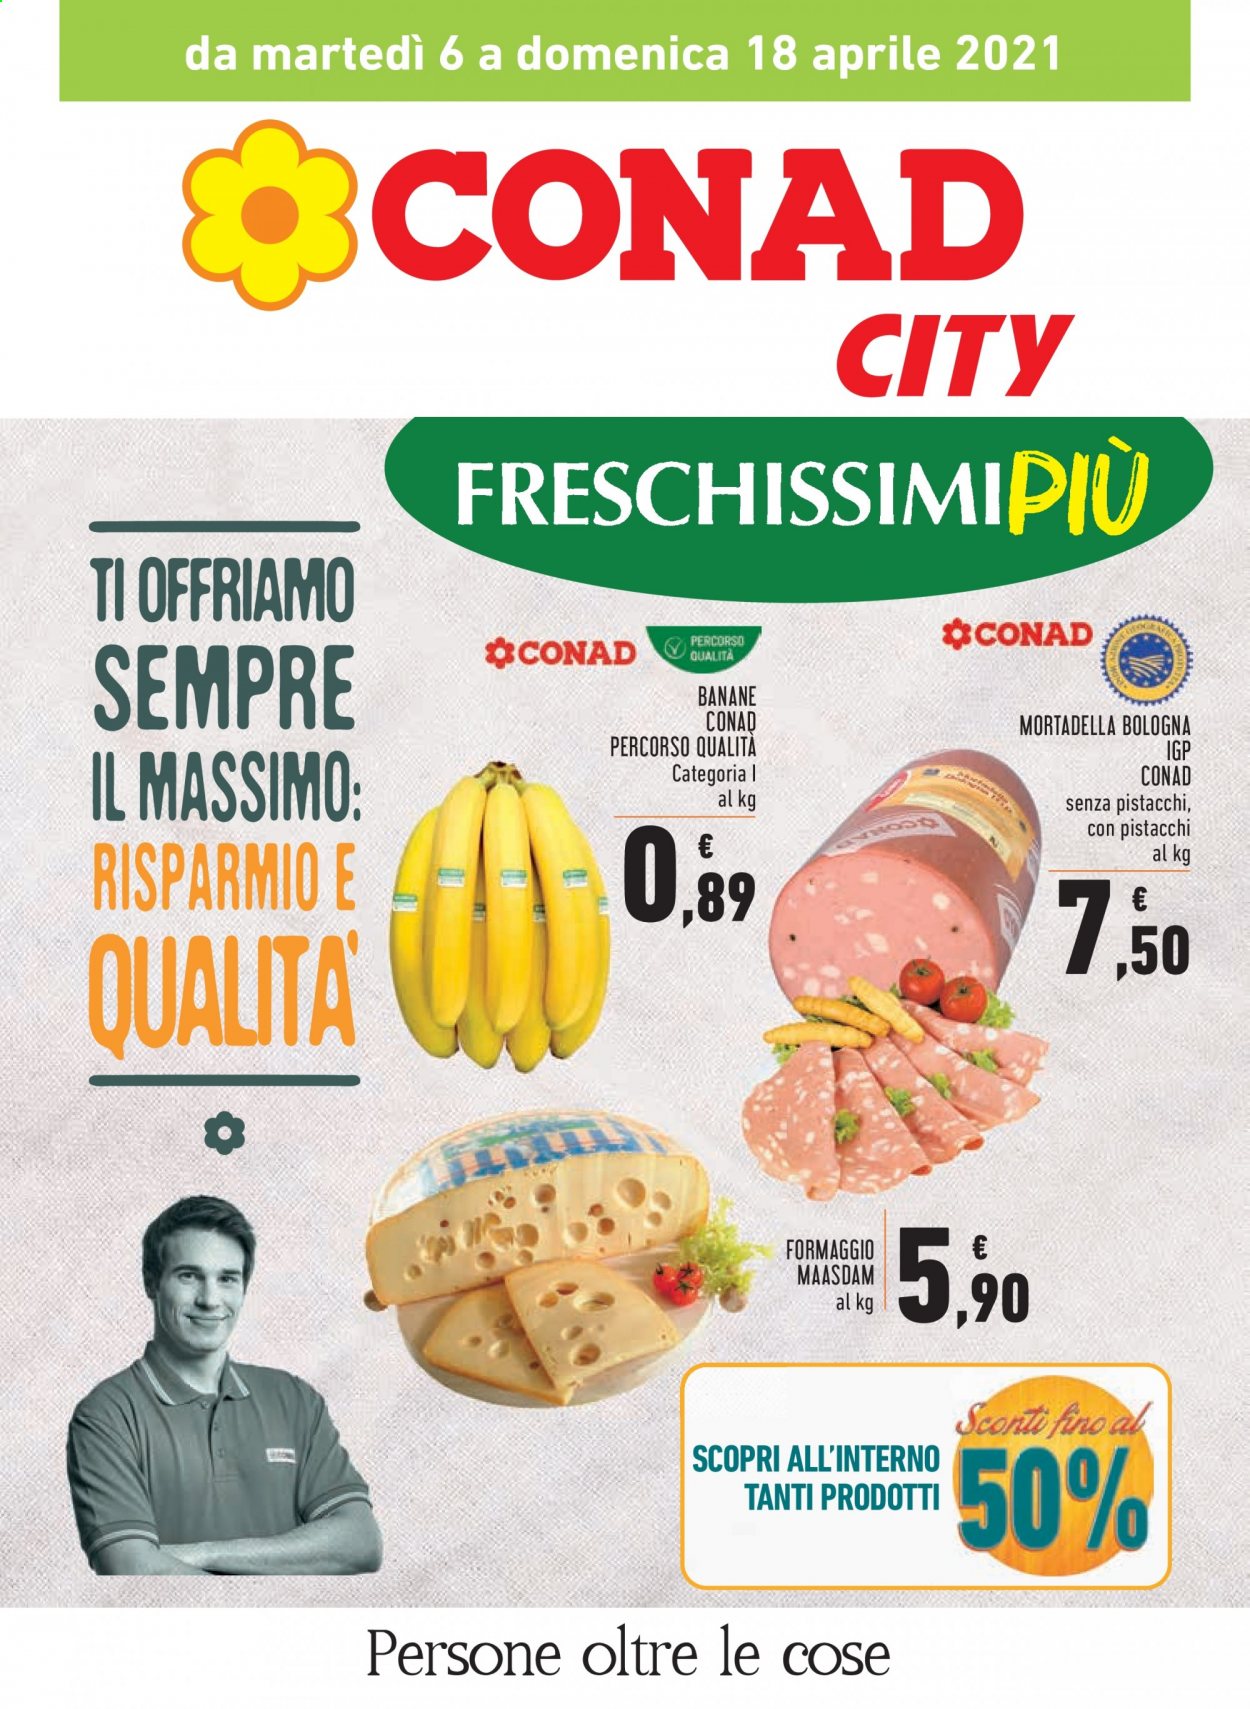 thumbnail - Volantino Conad - 6/4/2021 - 18/4/2021 - Prodotti in offerta - banane, mortadella, formaggio, maasdam. Pagina 1.